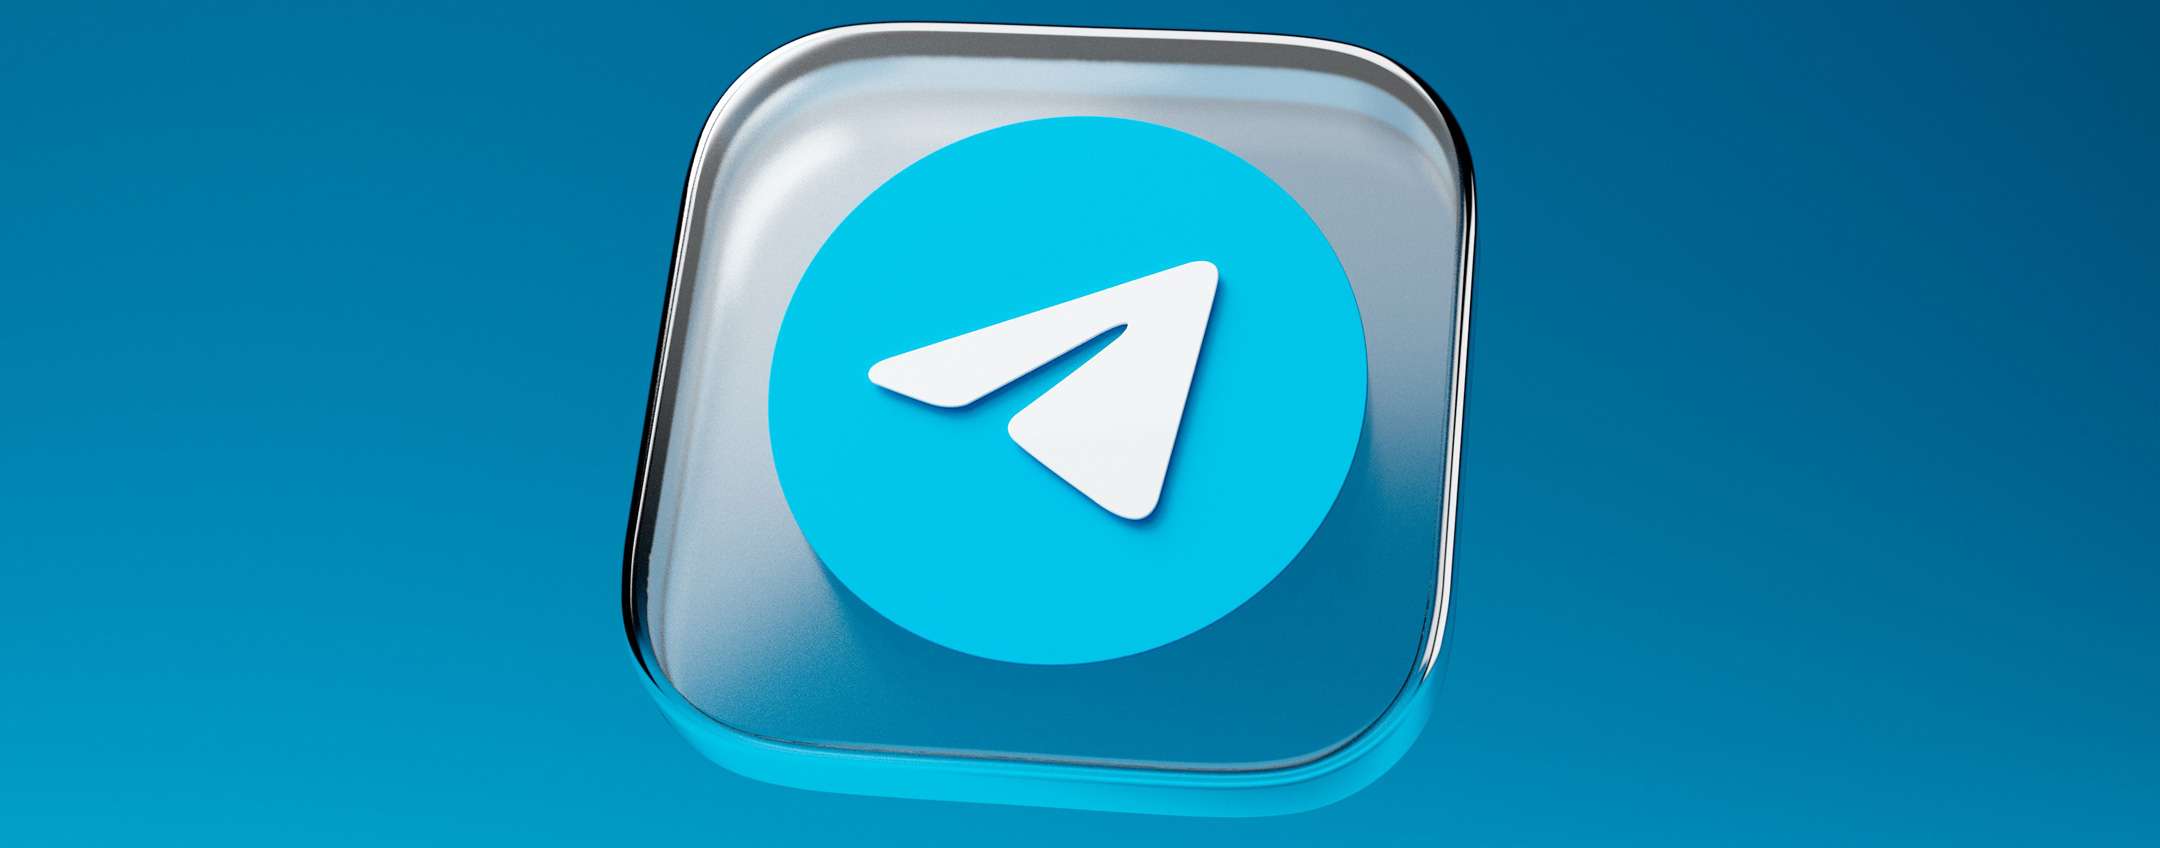 Старая версия телеграмм для андроид на русском языке скачать бесплатно фото 119